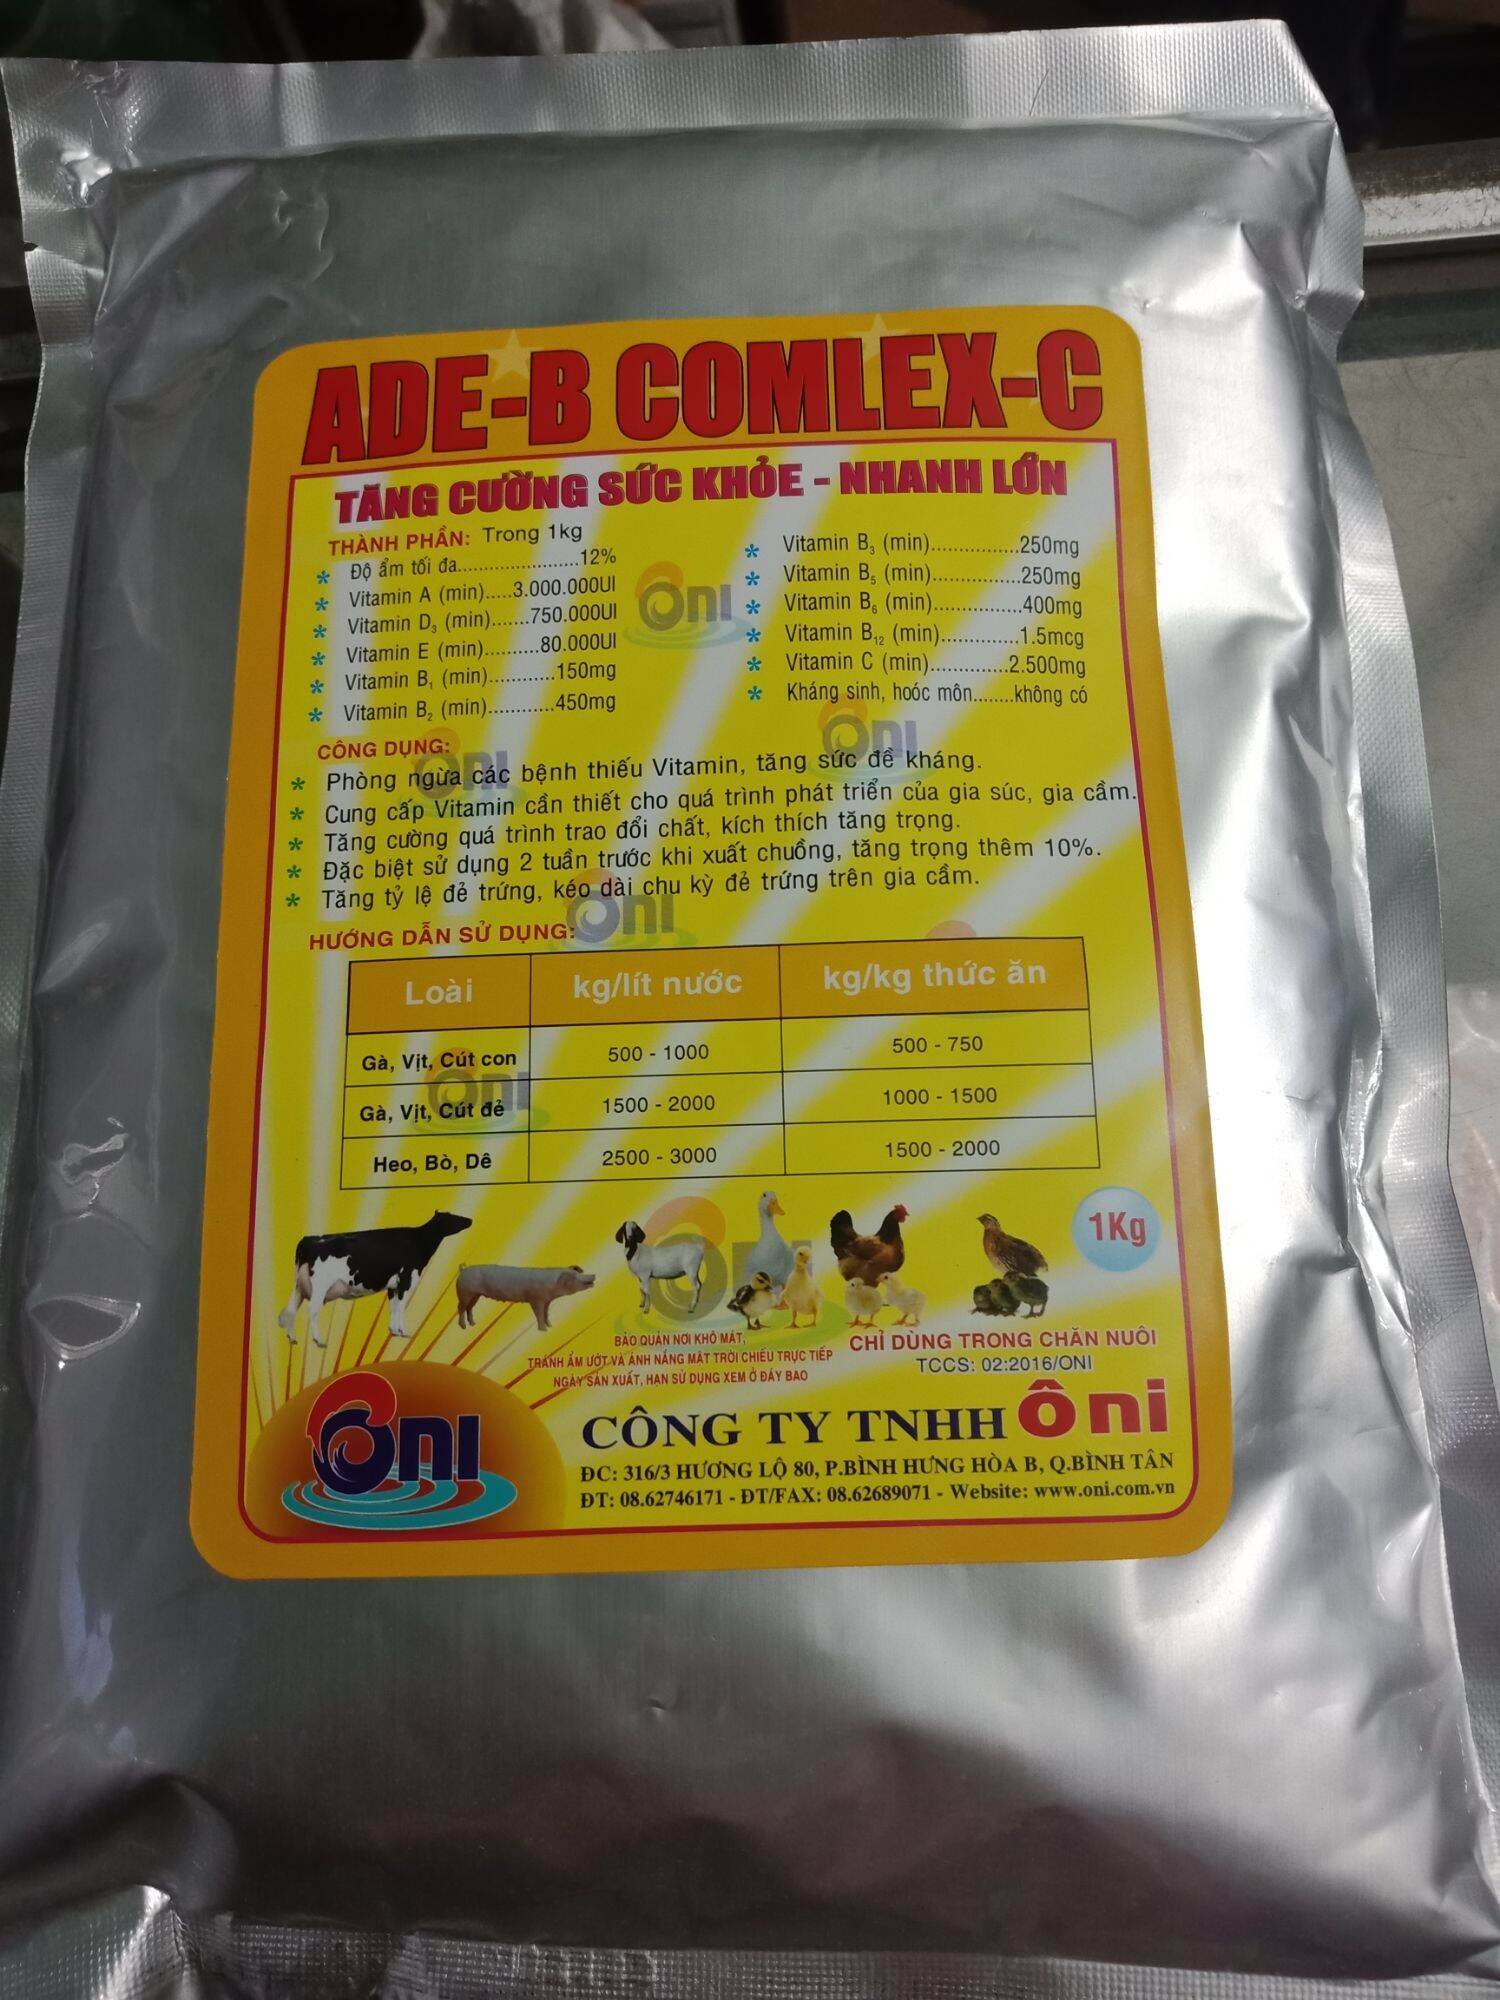 5 GÓI ADE - B COMLEX -C (1KG) cho gà vịt heo bò